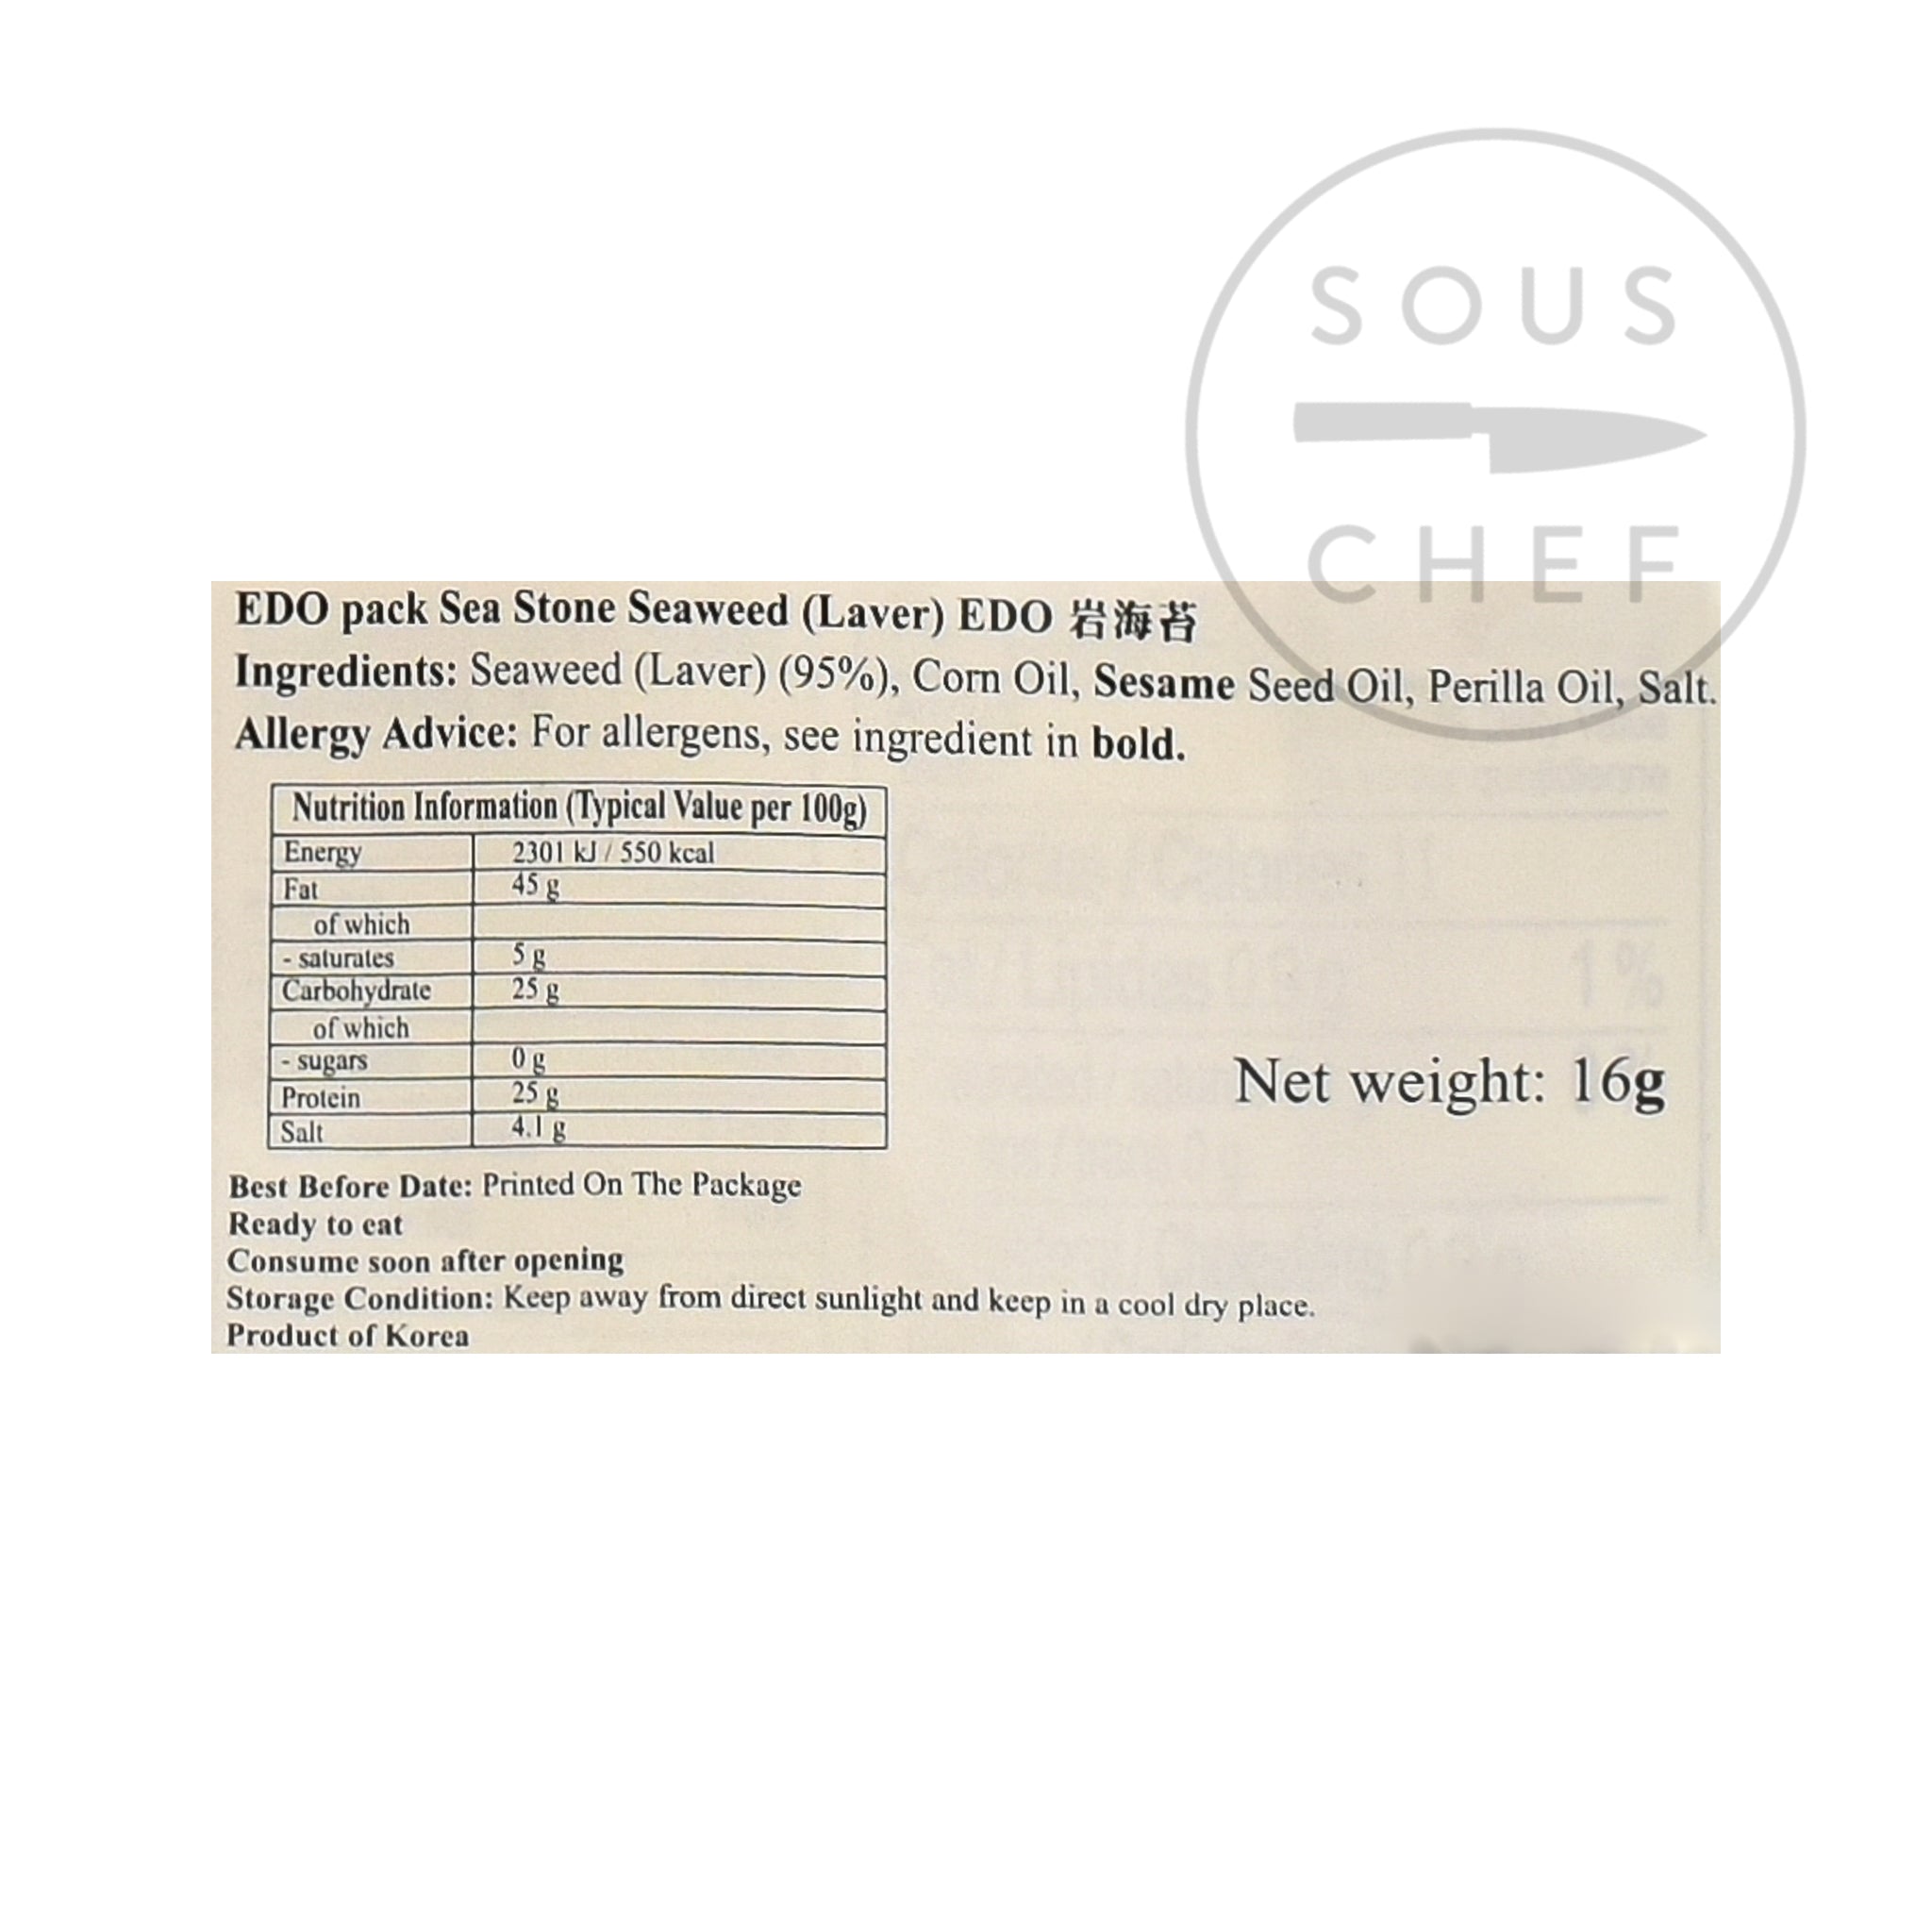 Seasoned Seaweed Snack Pack 20g nutritional information ingredients